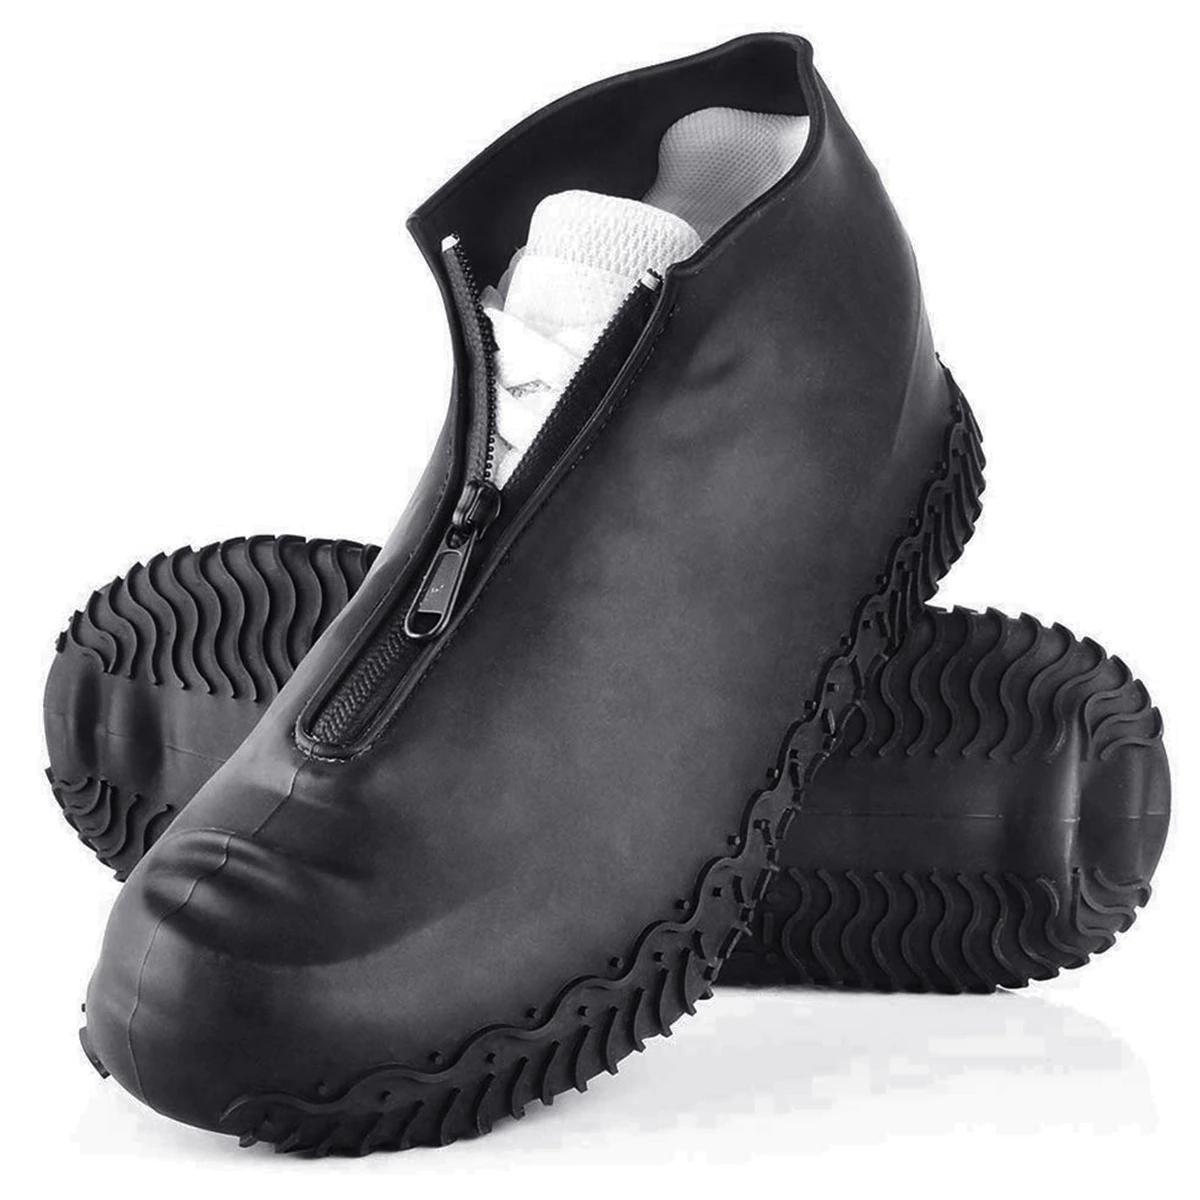 Фото 1 Cиликоновые чехлы-бахилы для обуви с молнией M 38-41 CG WSS2 Black